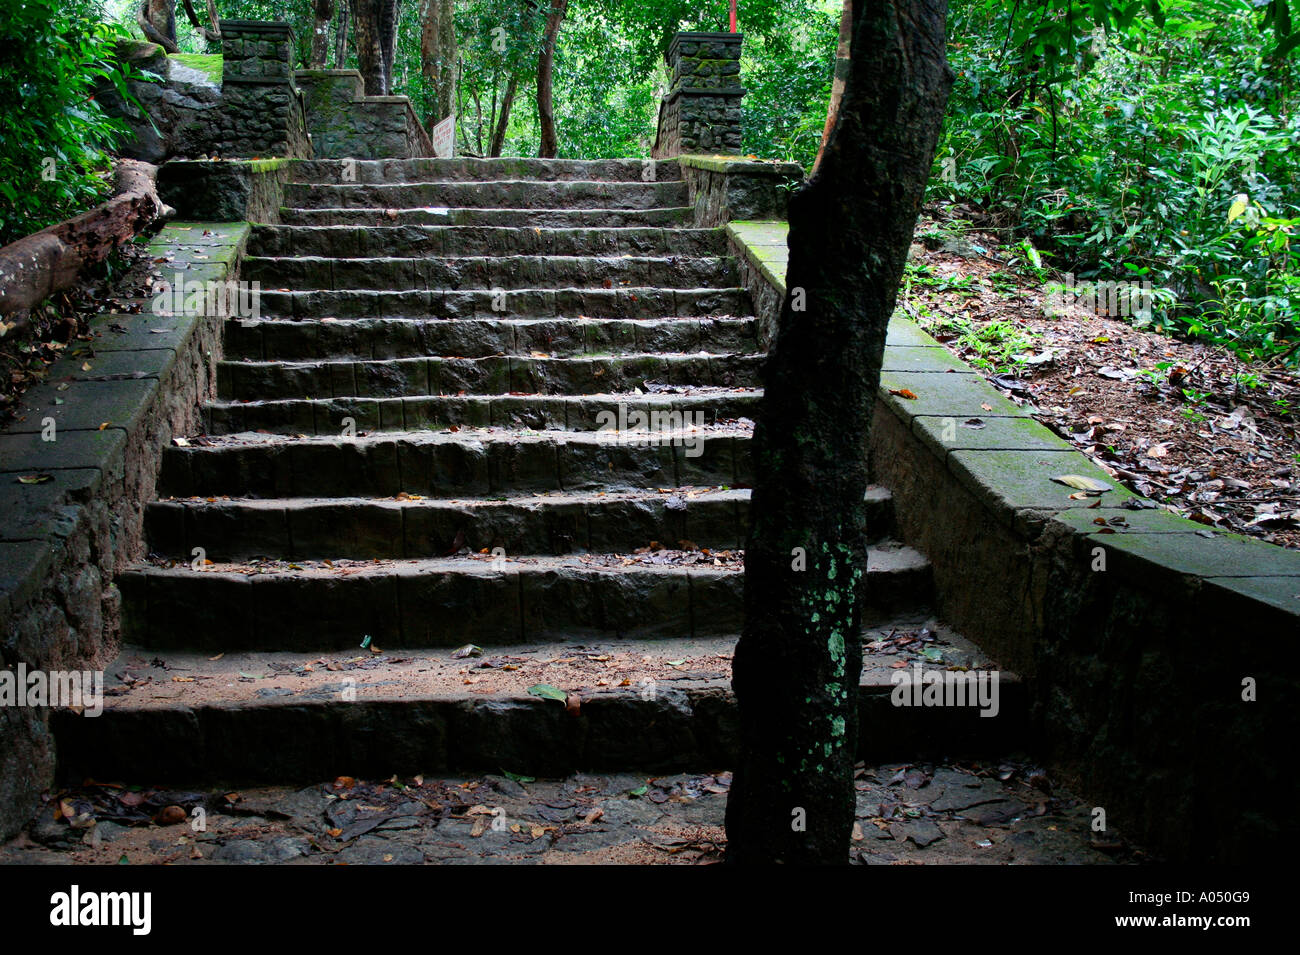 Vista de un tronco de árbol entre húmedo y mossy rock pasos cubiertos con hojas secas construido a través de los densos bosques de Kerala Foto de stock